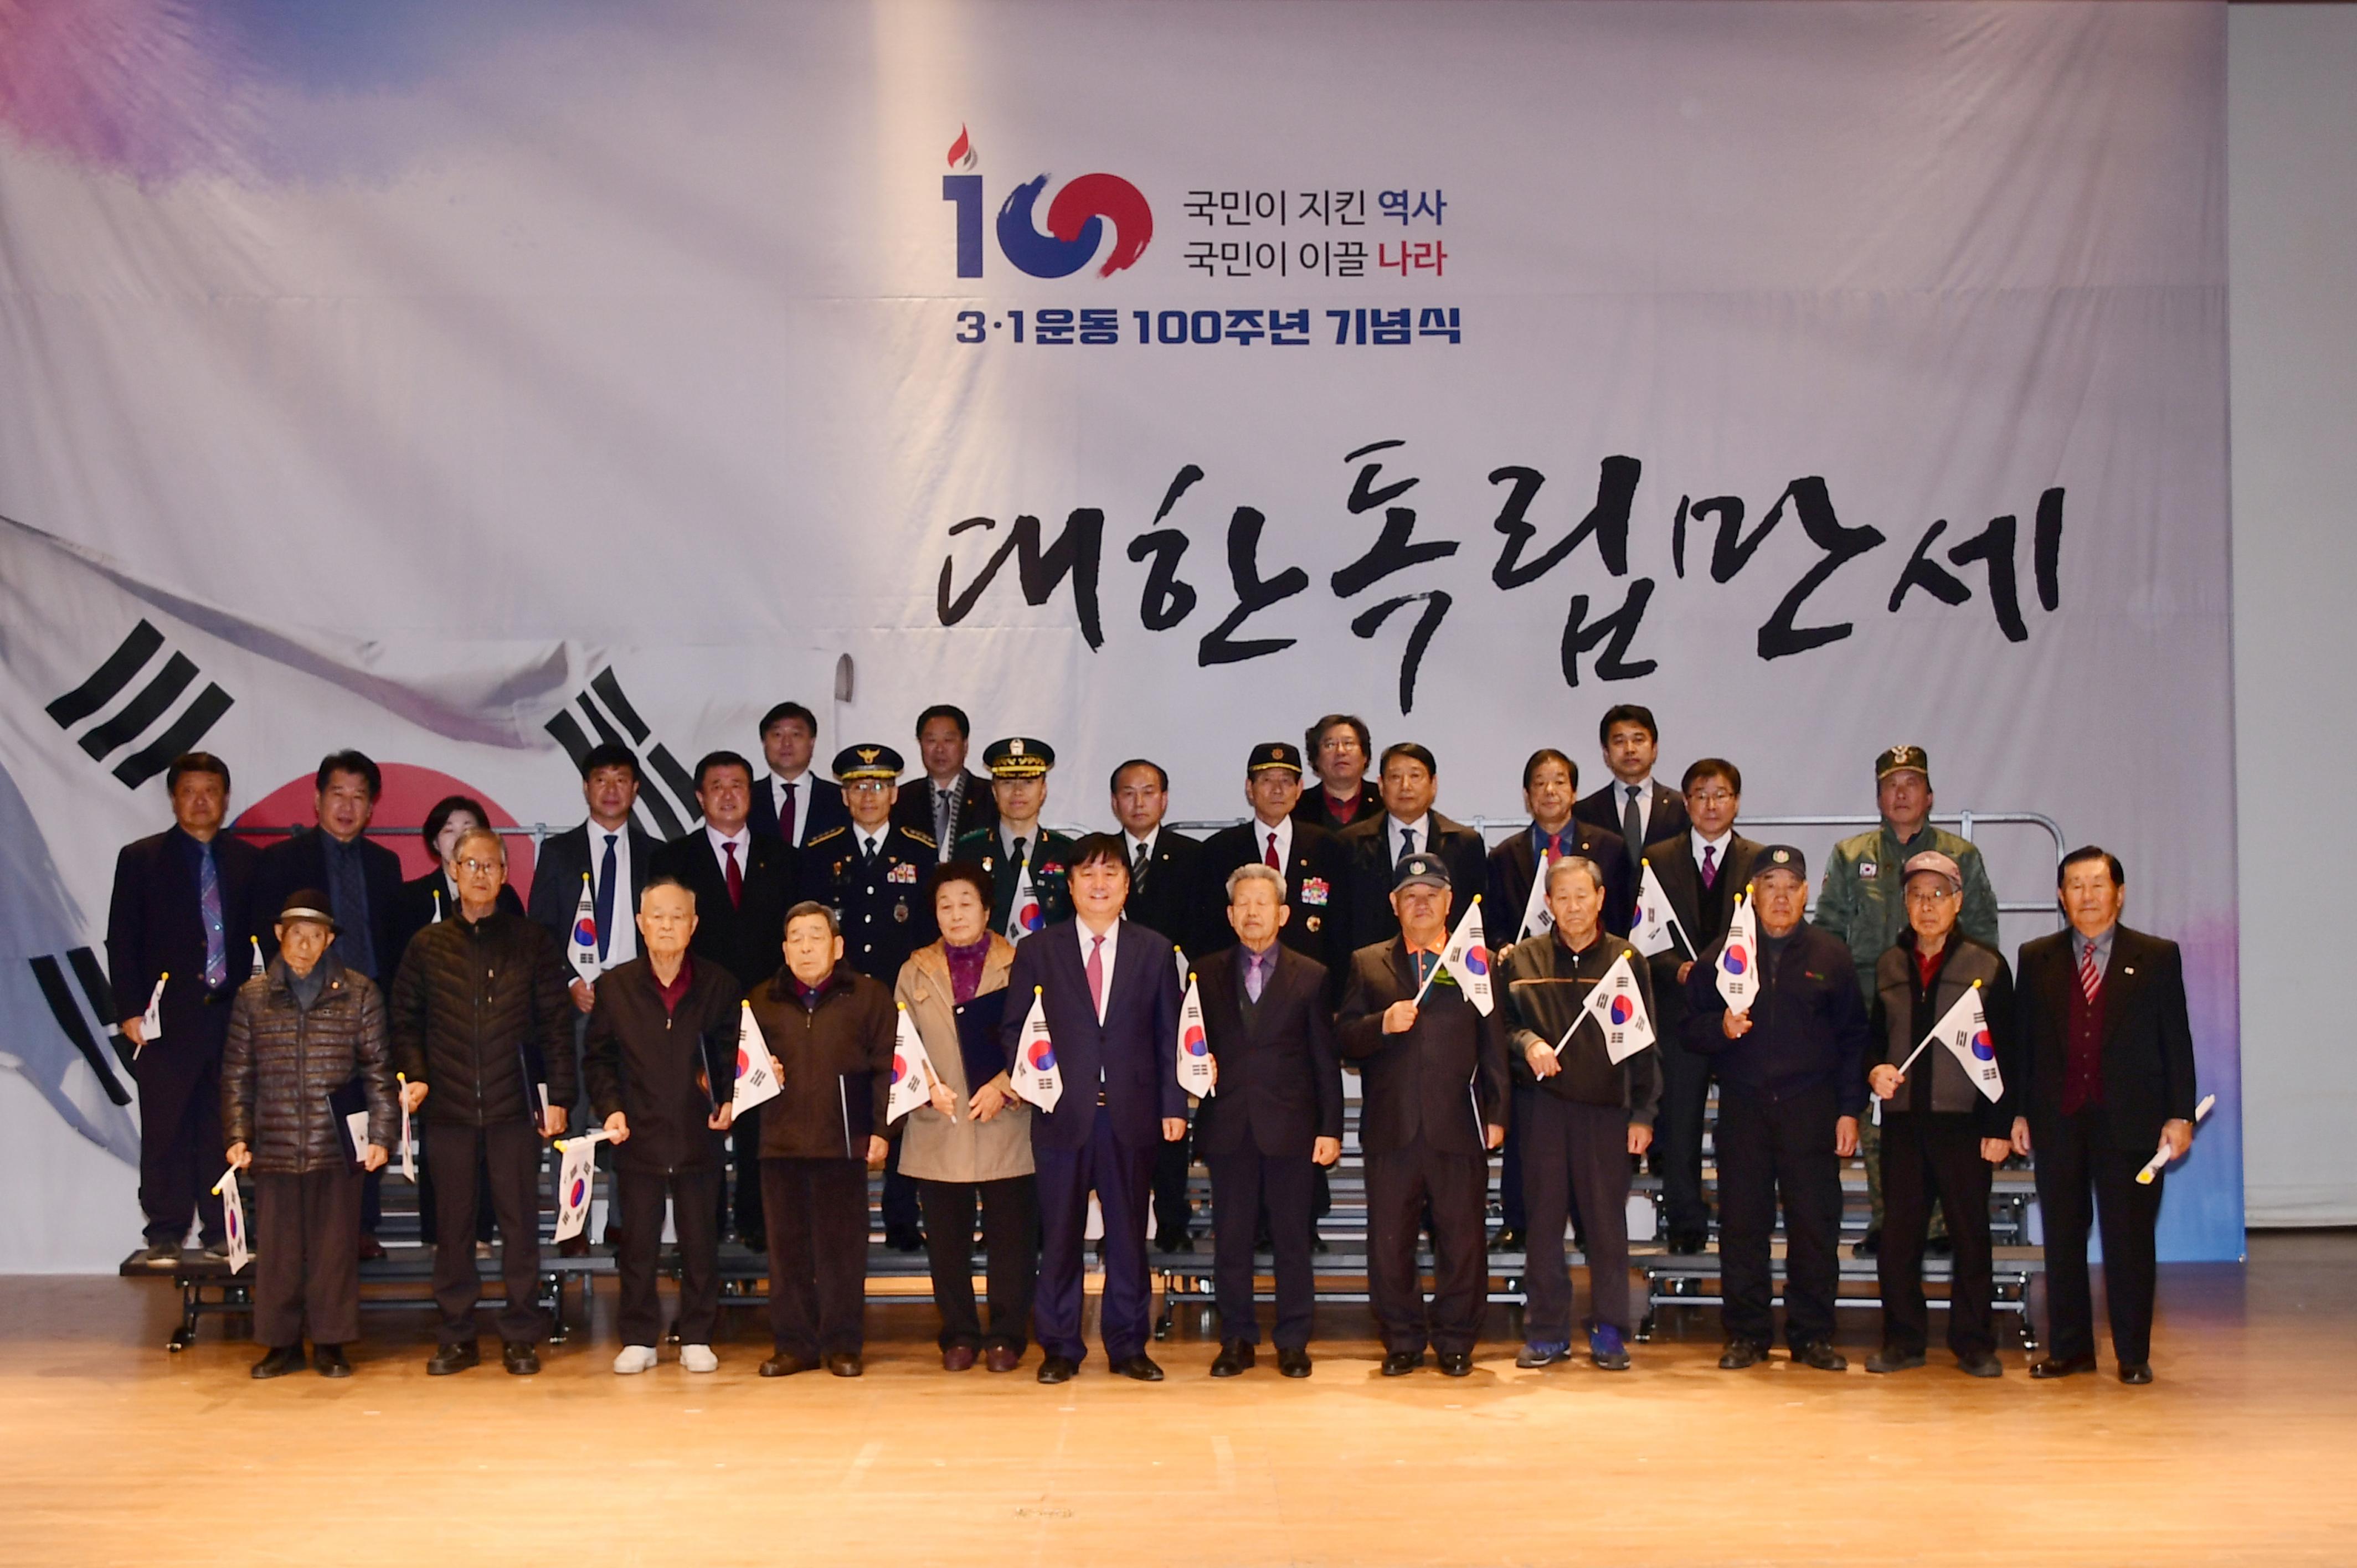 2019 3.1운동 100주년 기념행사 사진